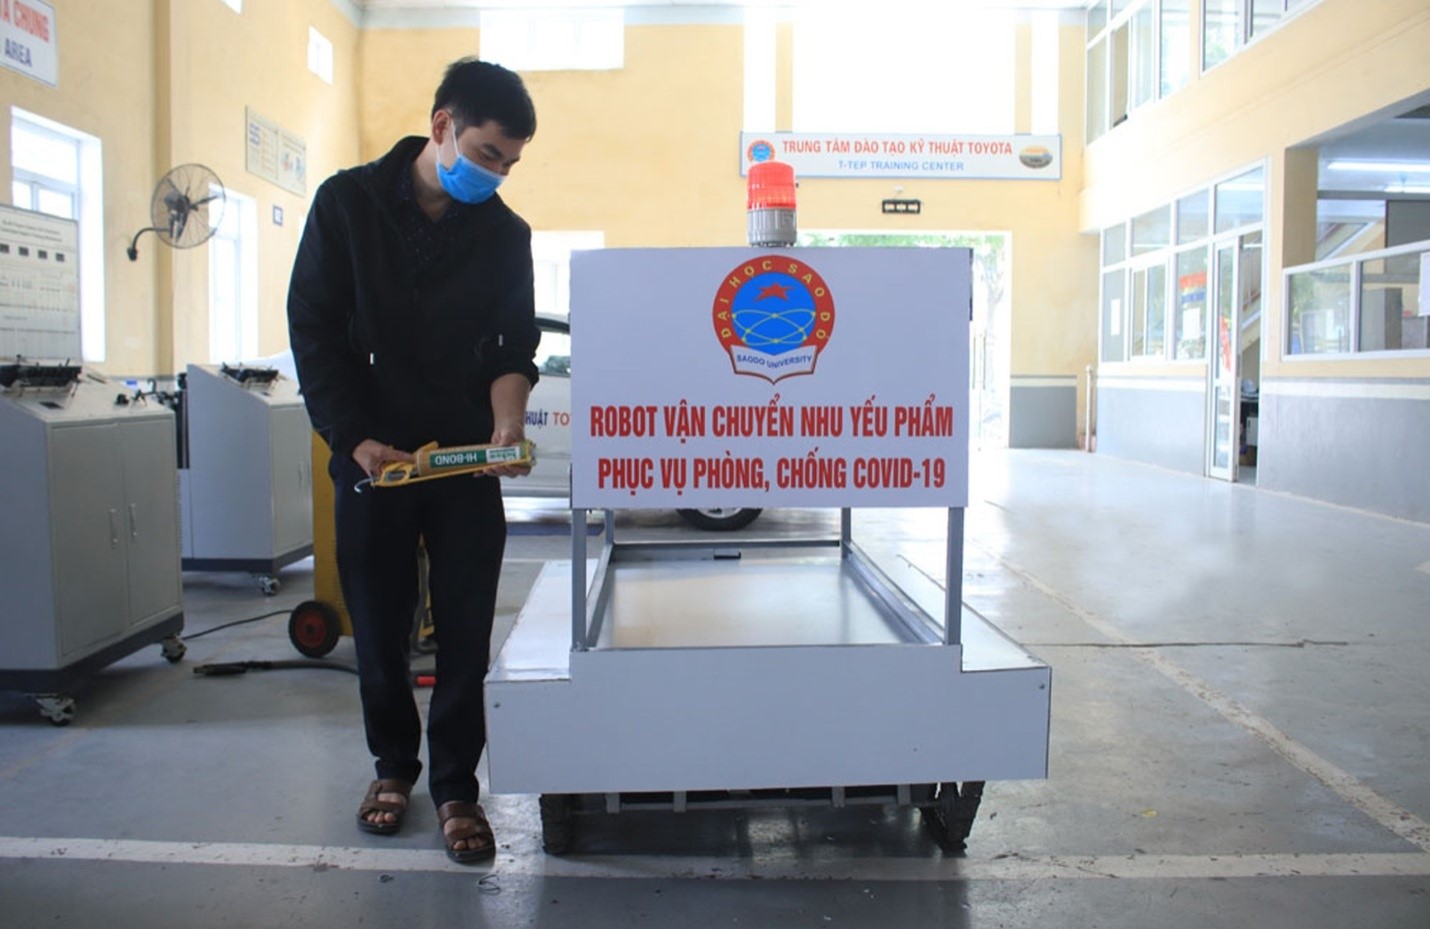 Đại học Sao Đỏ chế tạo “Robot vận chuyển nhu yếu phẩm” phục vụ phòng, chống dịch Covid-19